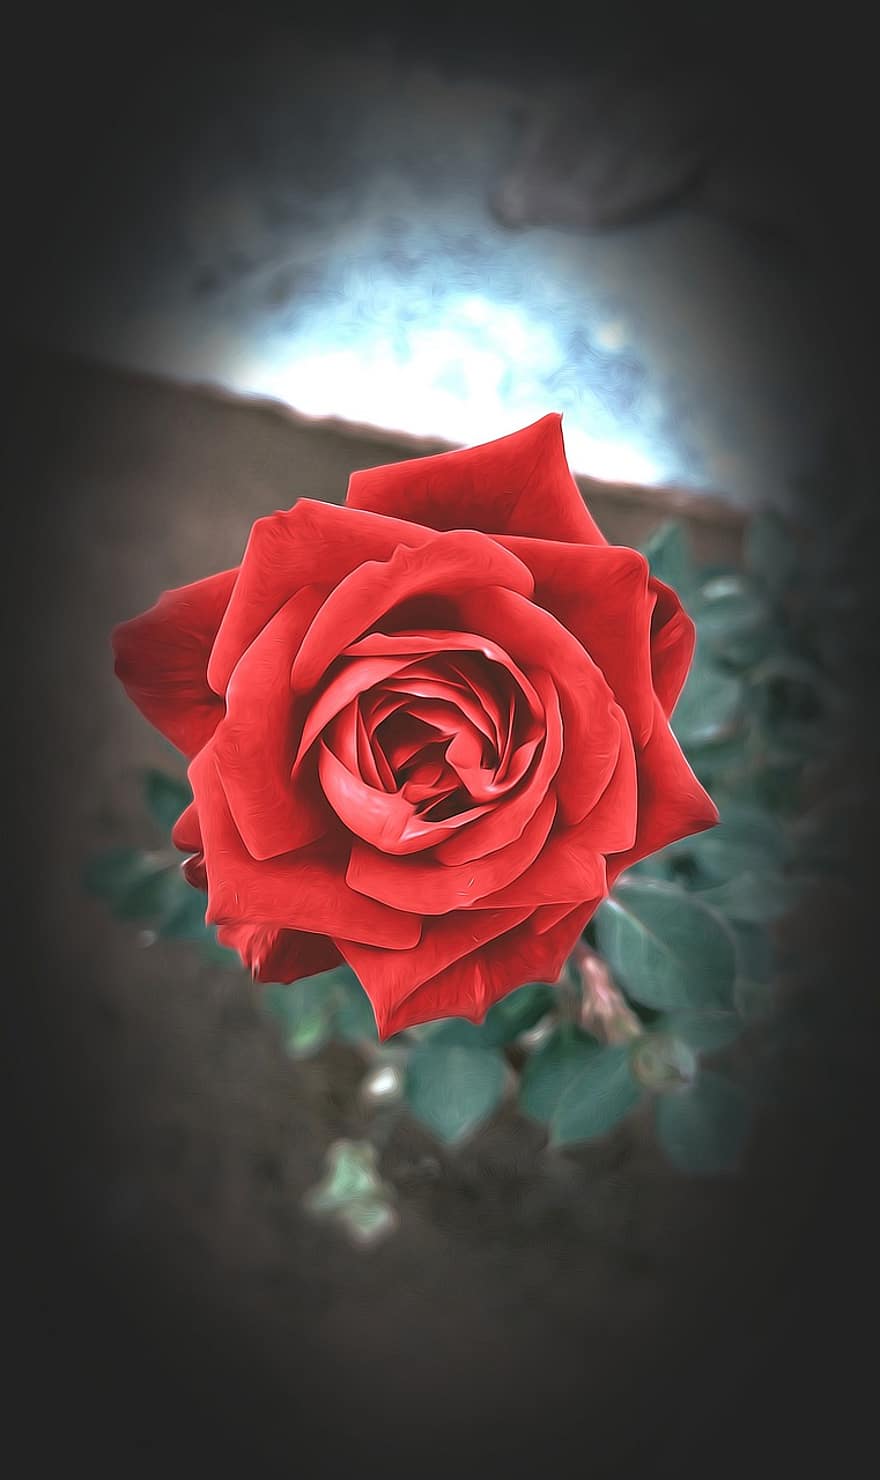 rosa, flor, plantar, Rosa vermelha, Flor vermelha, pétalas, pétala, fechar-se, romance, folha, cabeça de flor